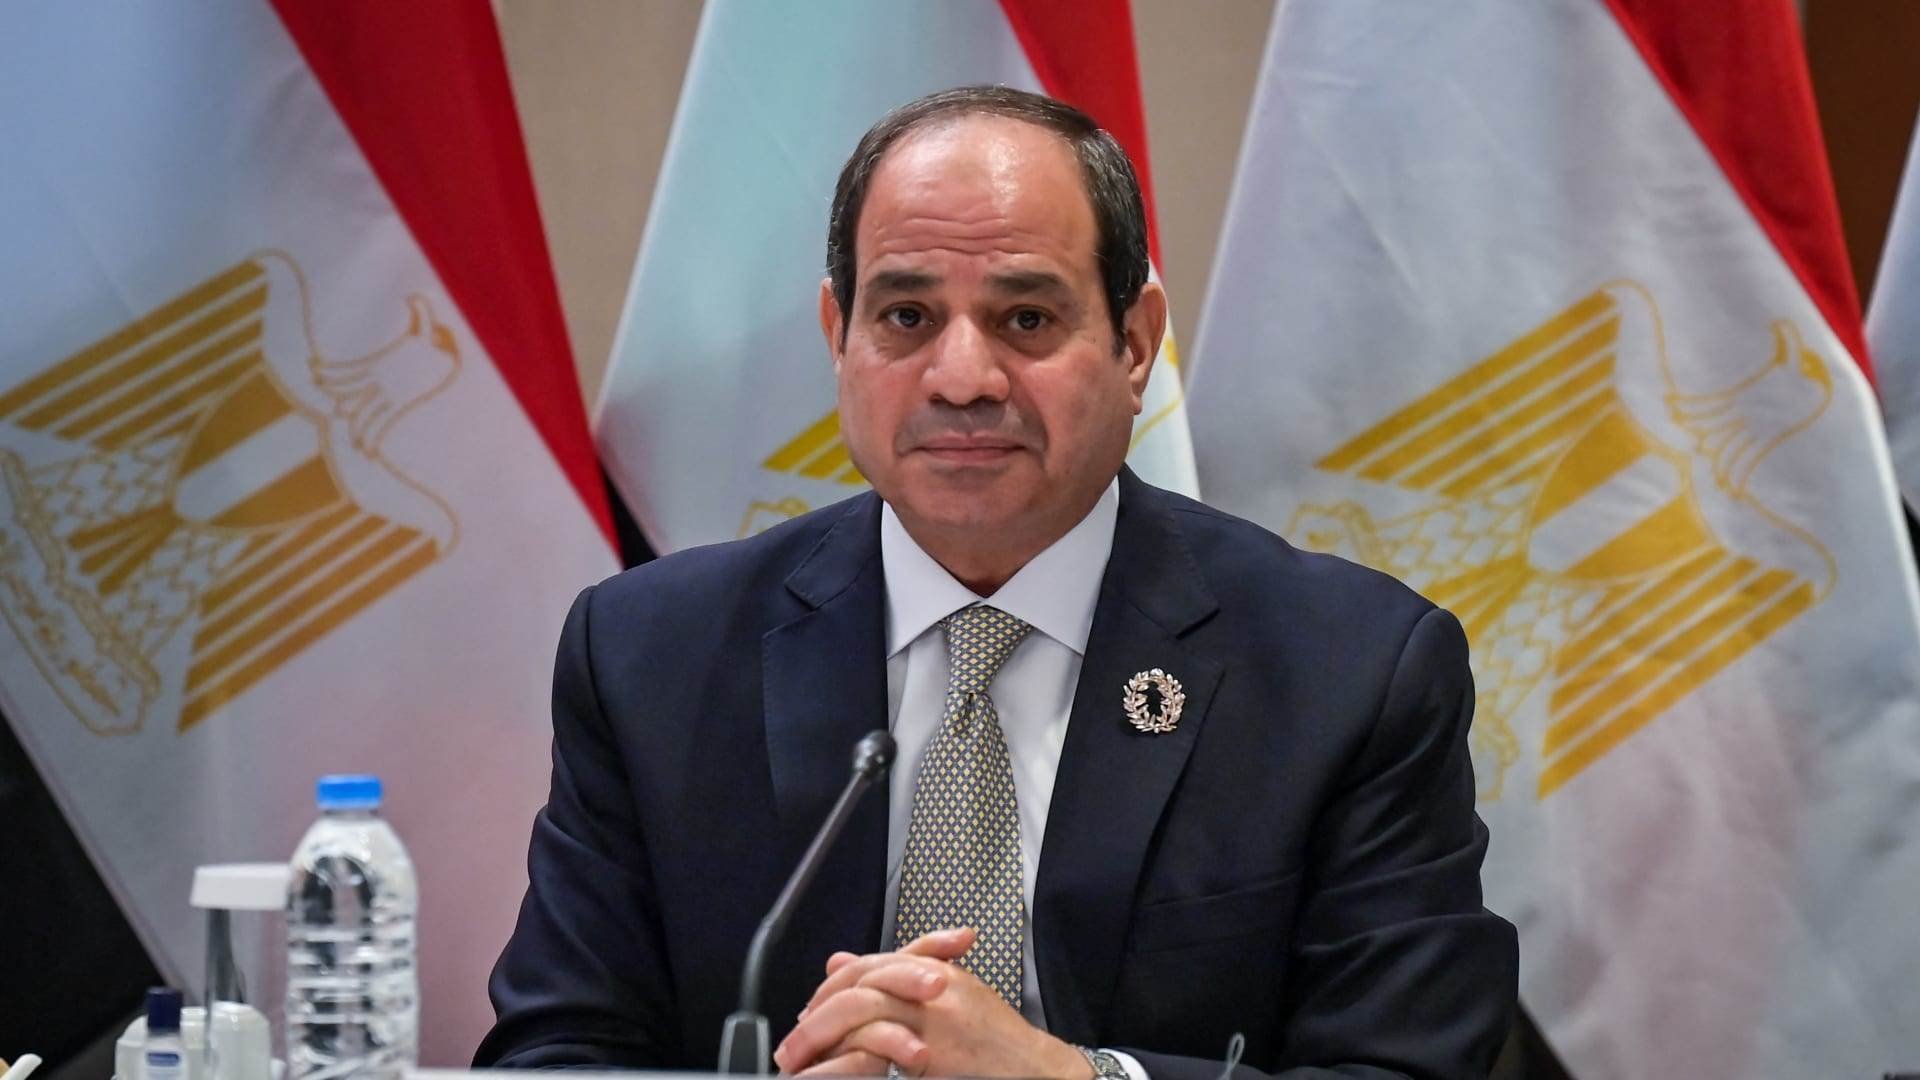 تصريحات هامة من الرئيس السيسي للمصريين ومفاجأة عن تعويم الجنيه